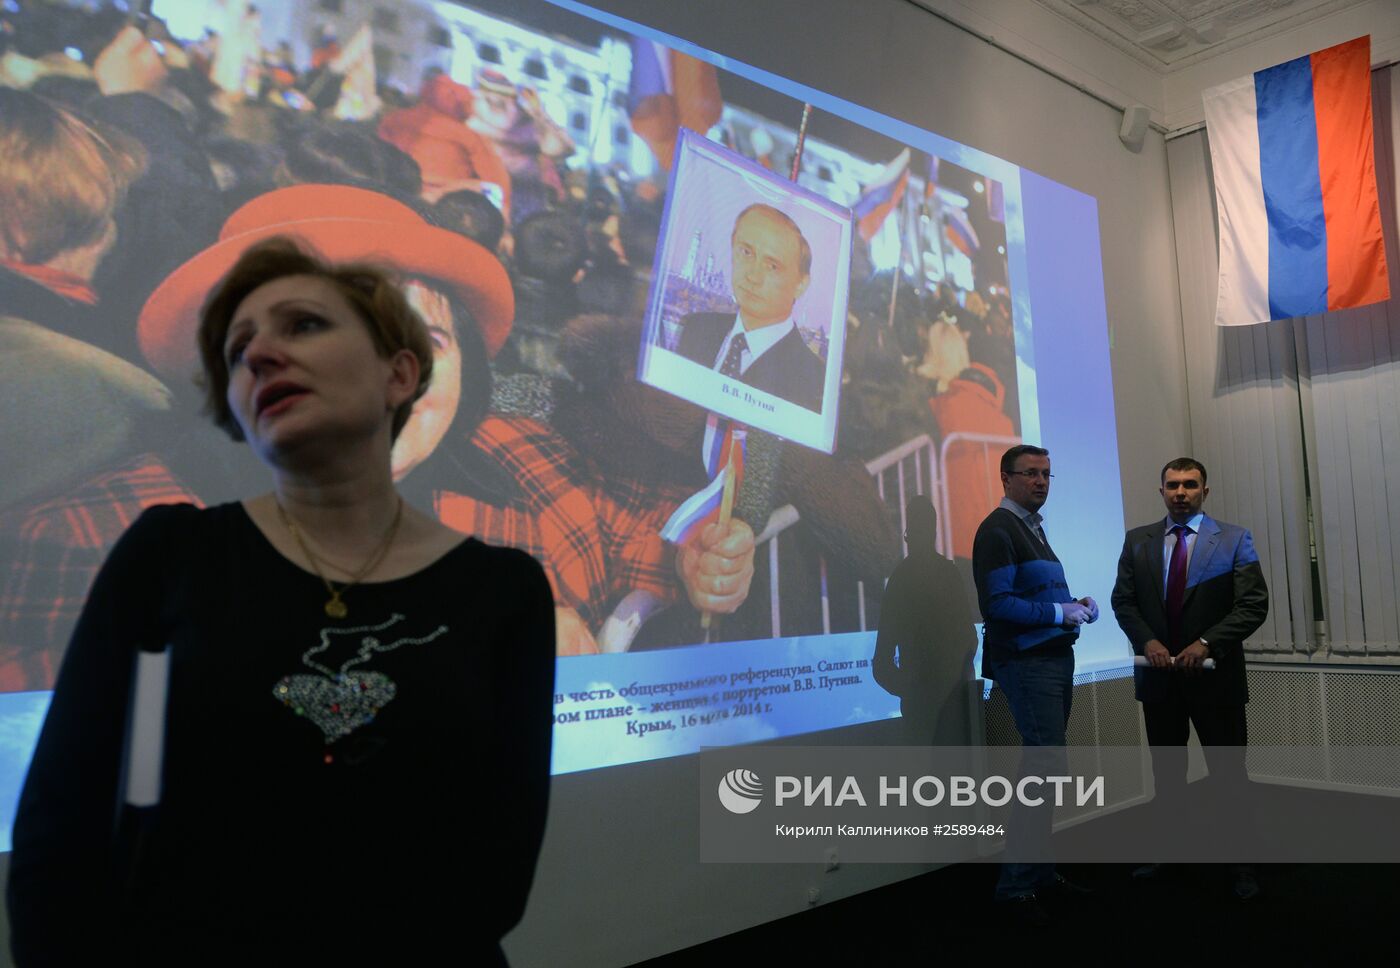 Открытие выставки "Крым: история возвращения"